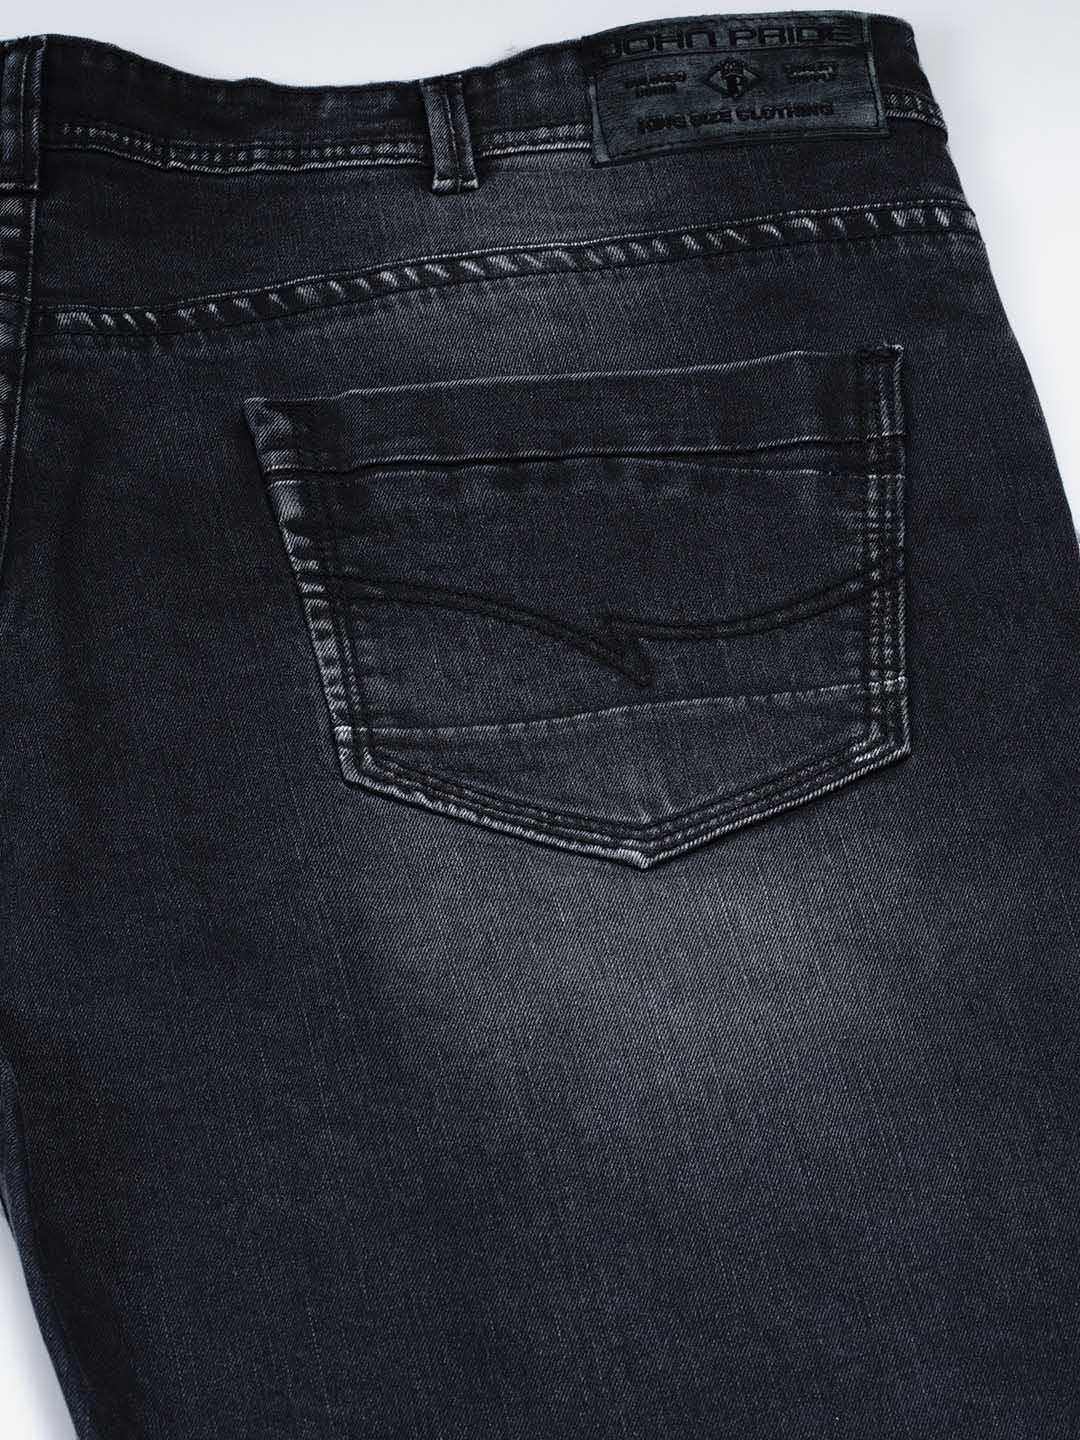 bottomwear/jeans/JPJ12119/jpj12119-5.jpg